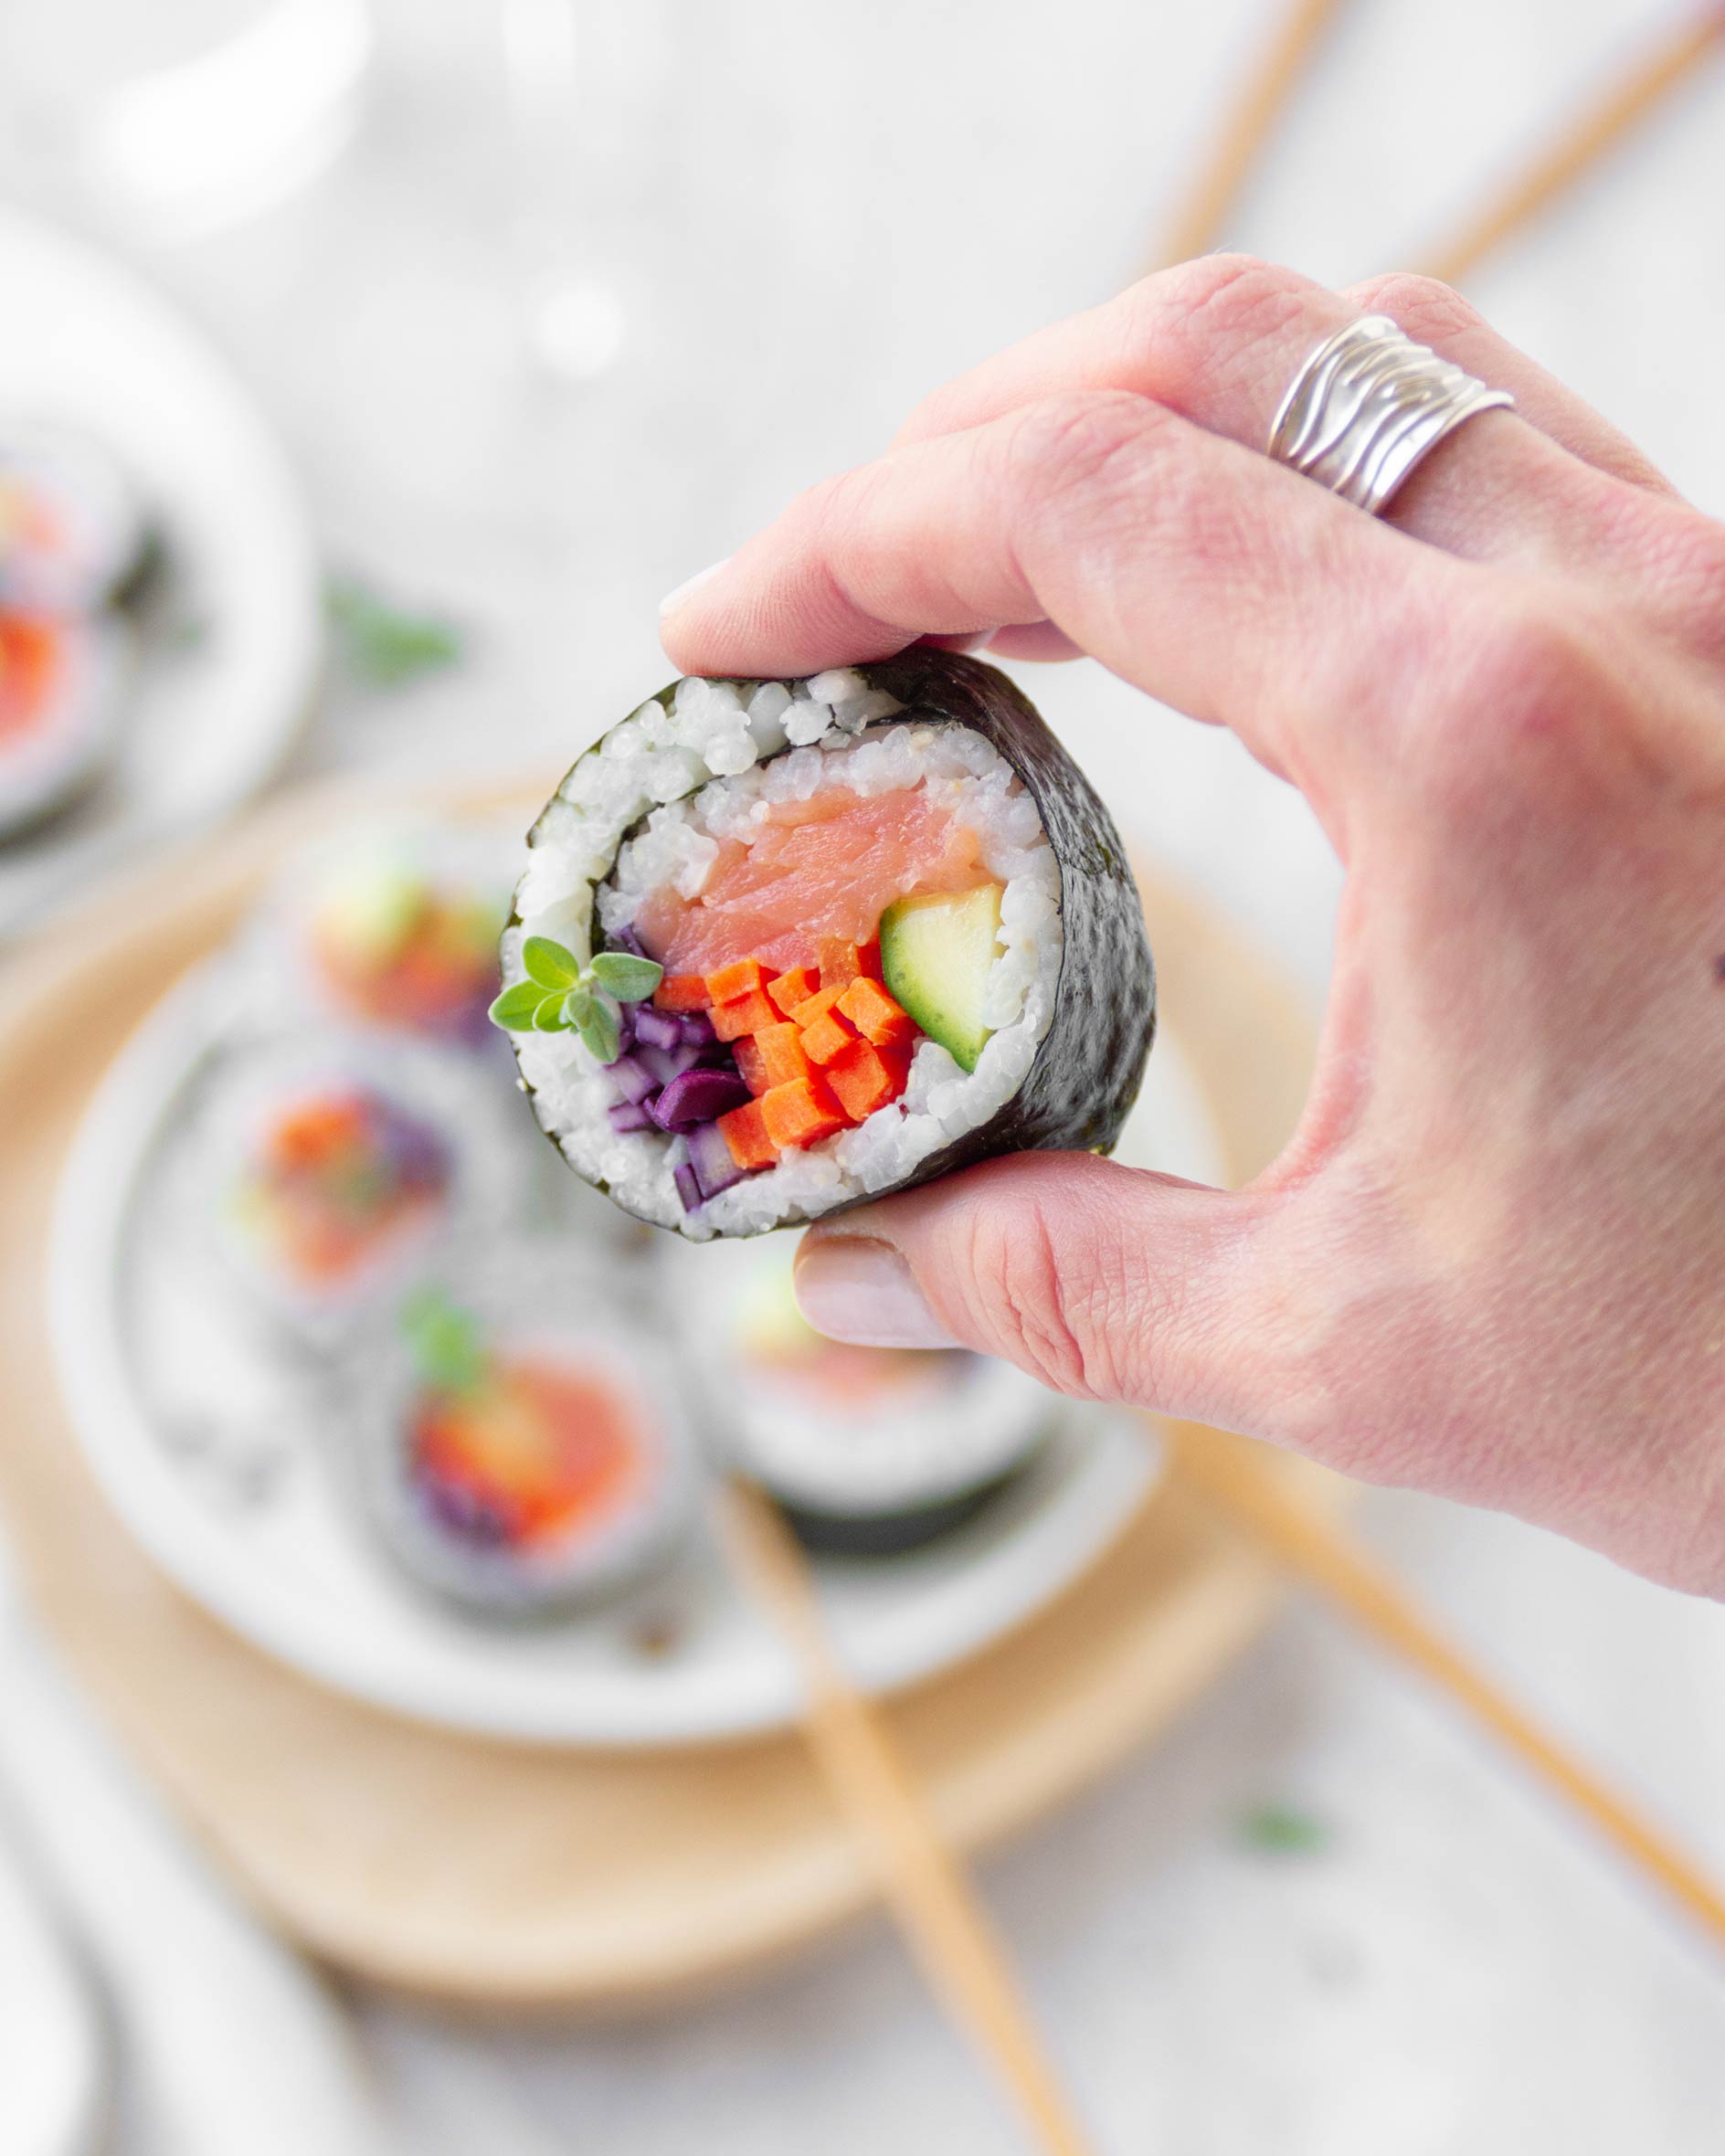 Conosci la differenza tra i diversi tipi di sushi?